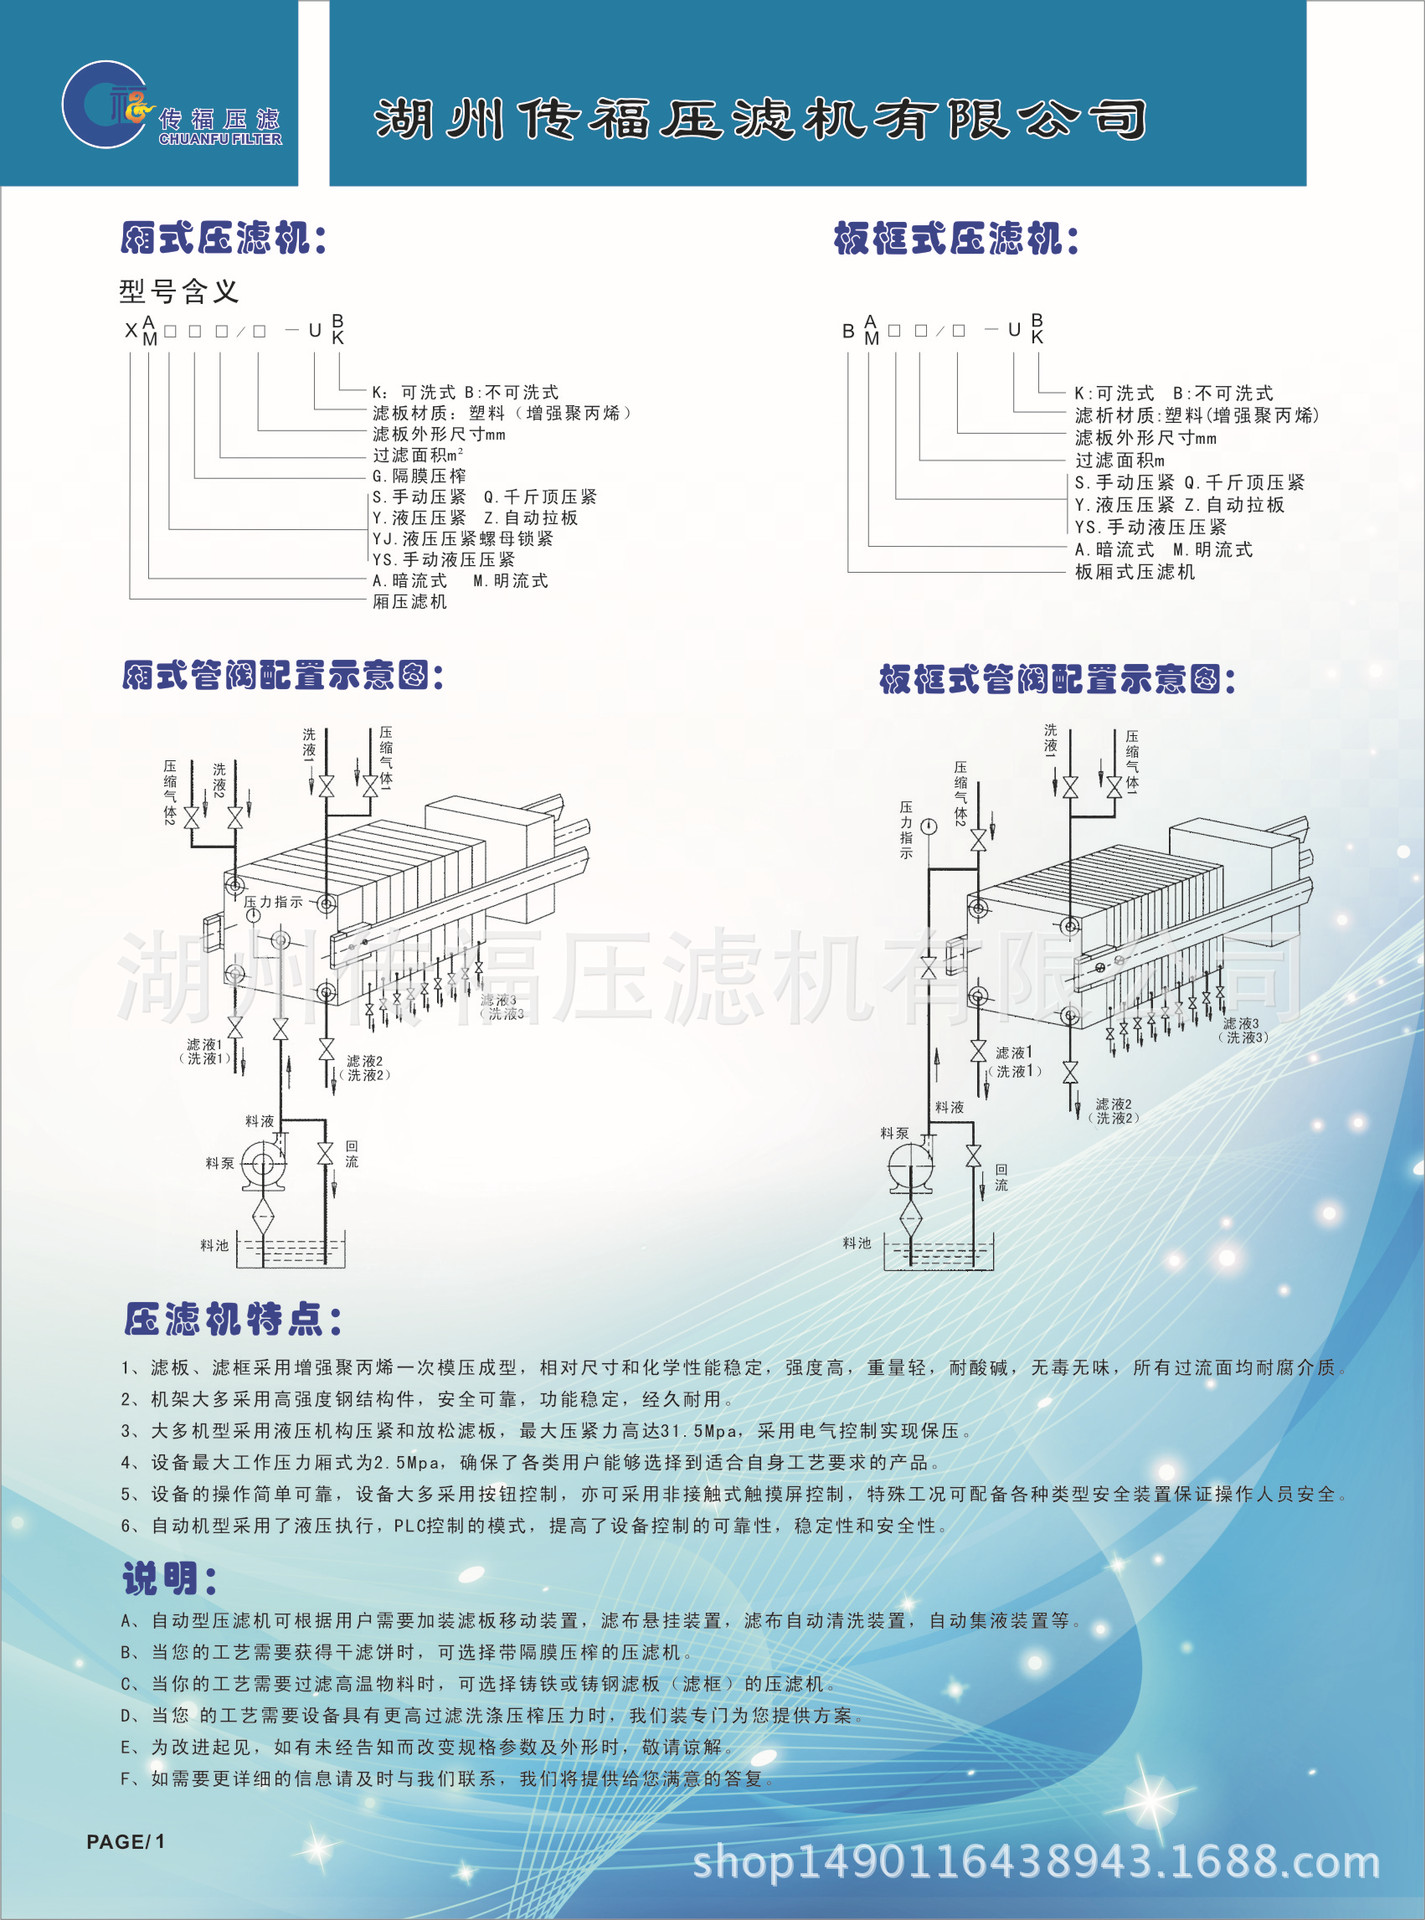 厂家专业生产压滤机 板框压滤机 隔膜压滤机 品质卓越 欢迎采购示例图1